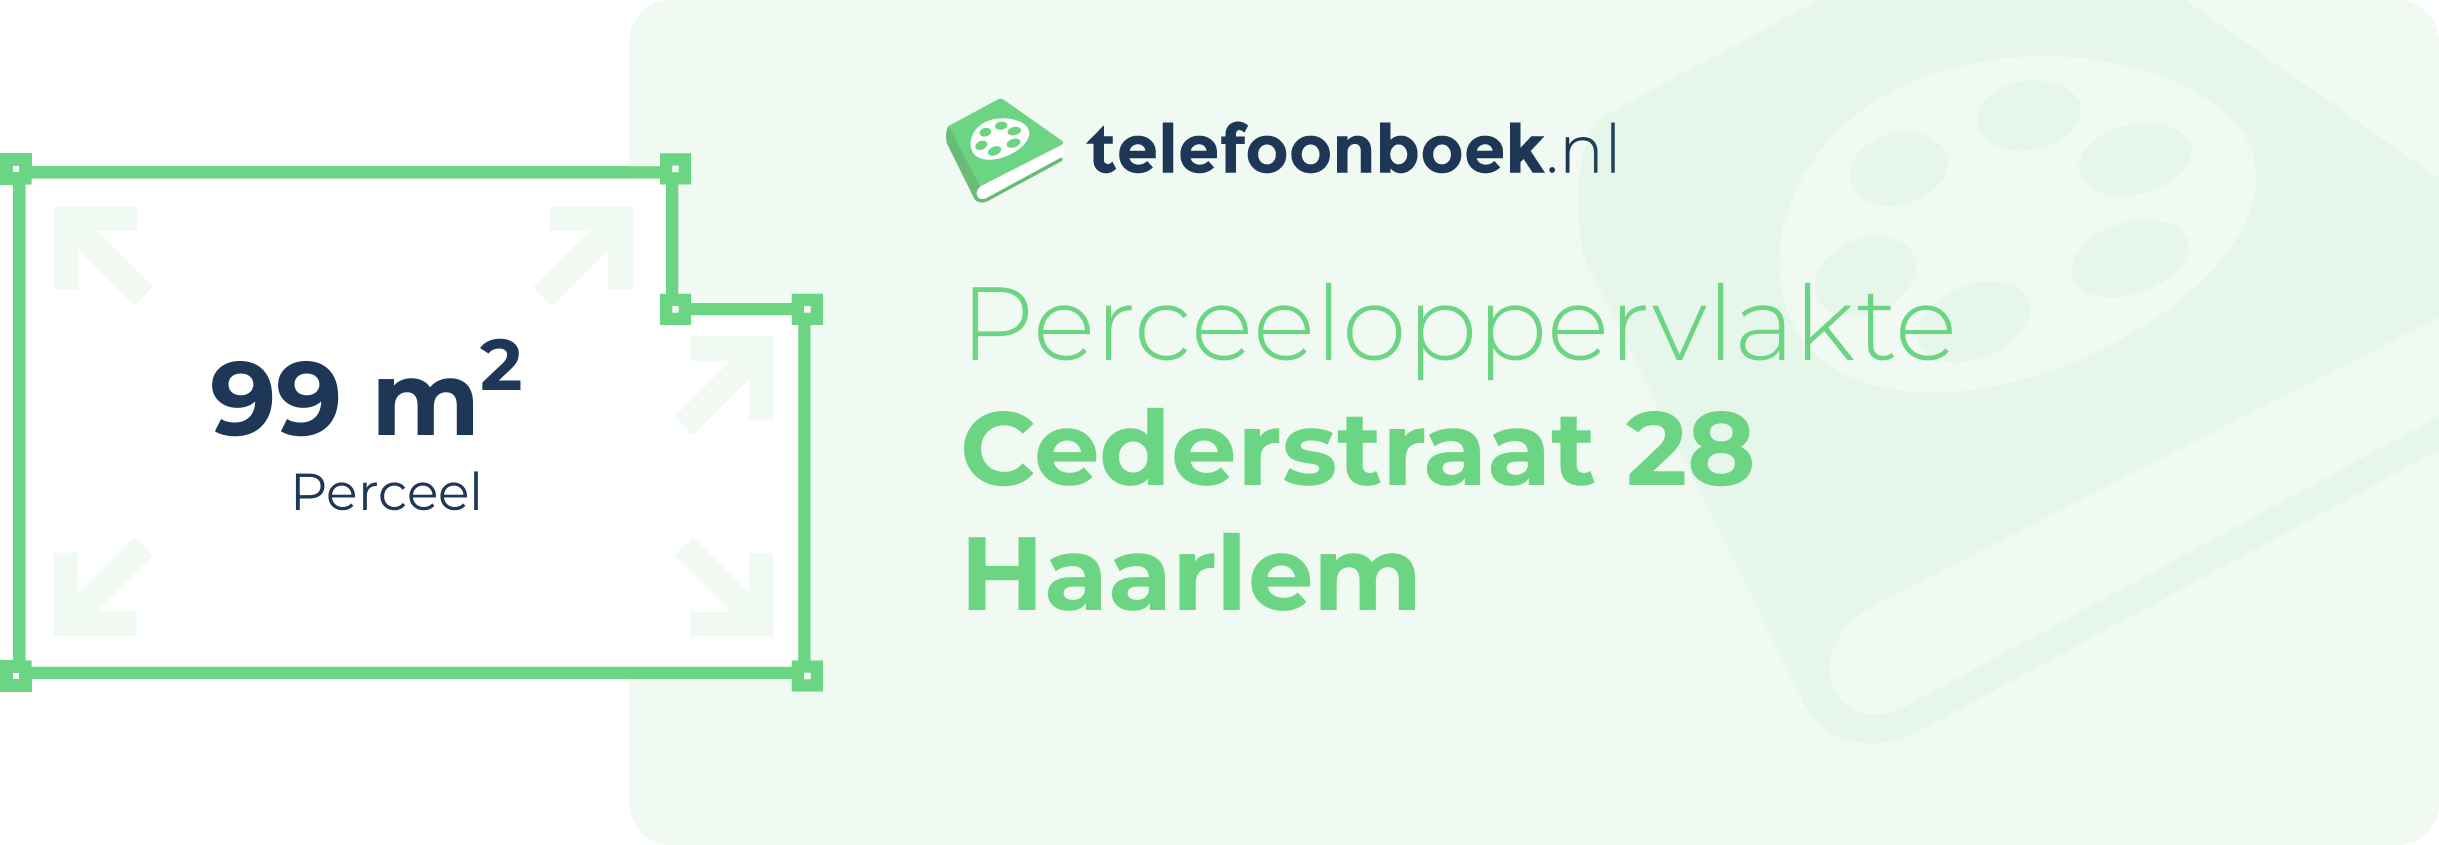 Perceeloppervlakte Cederstraat 28 Haarlem